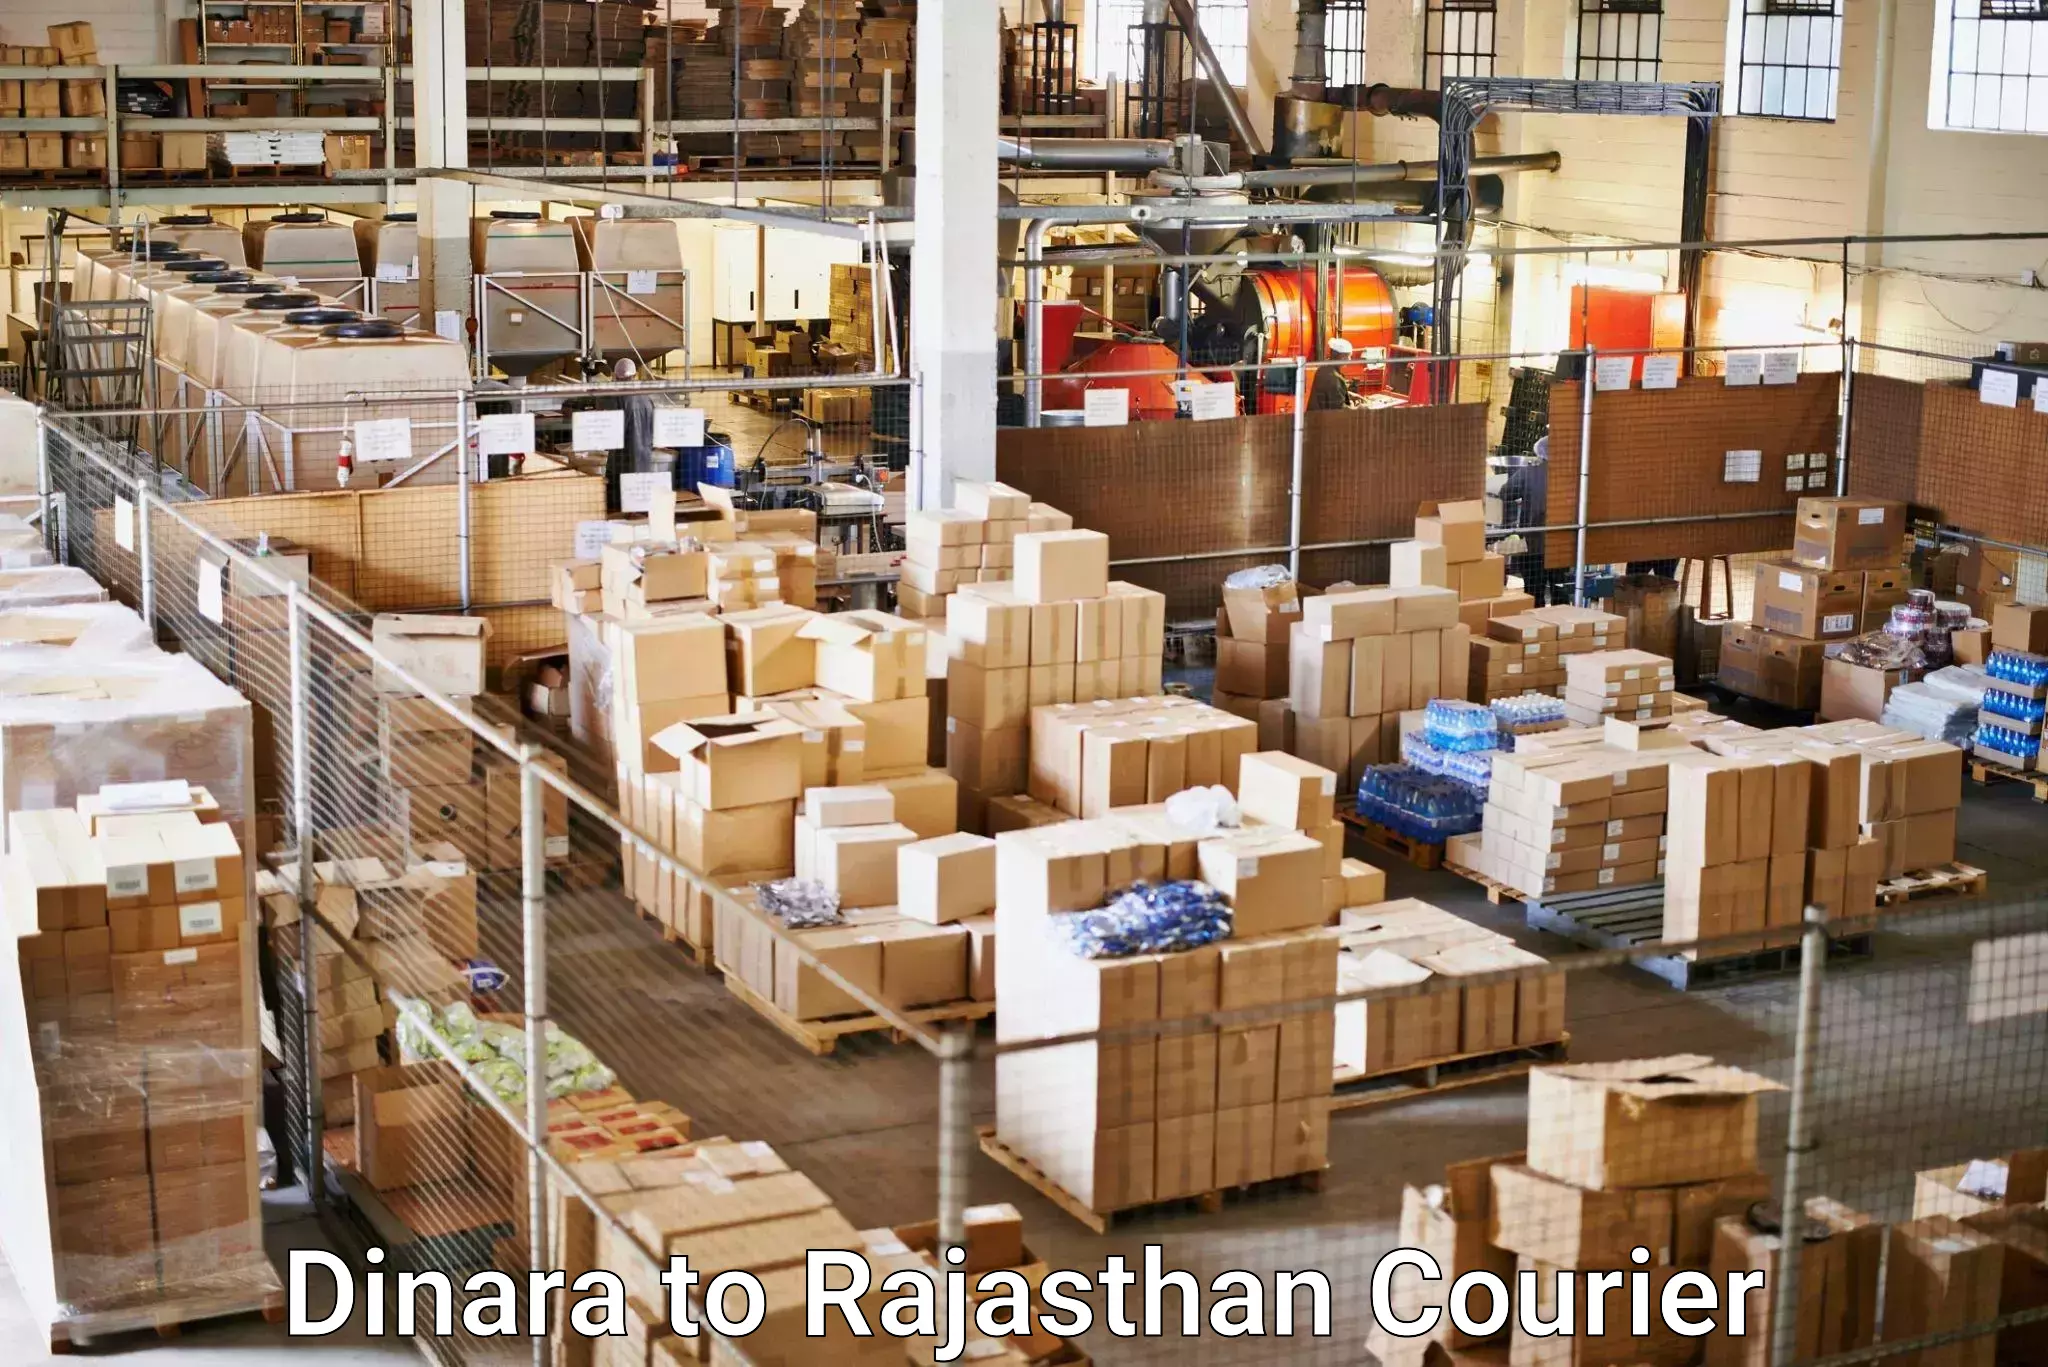 Local delivery service Dinara to Reodar